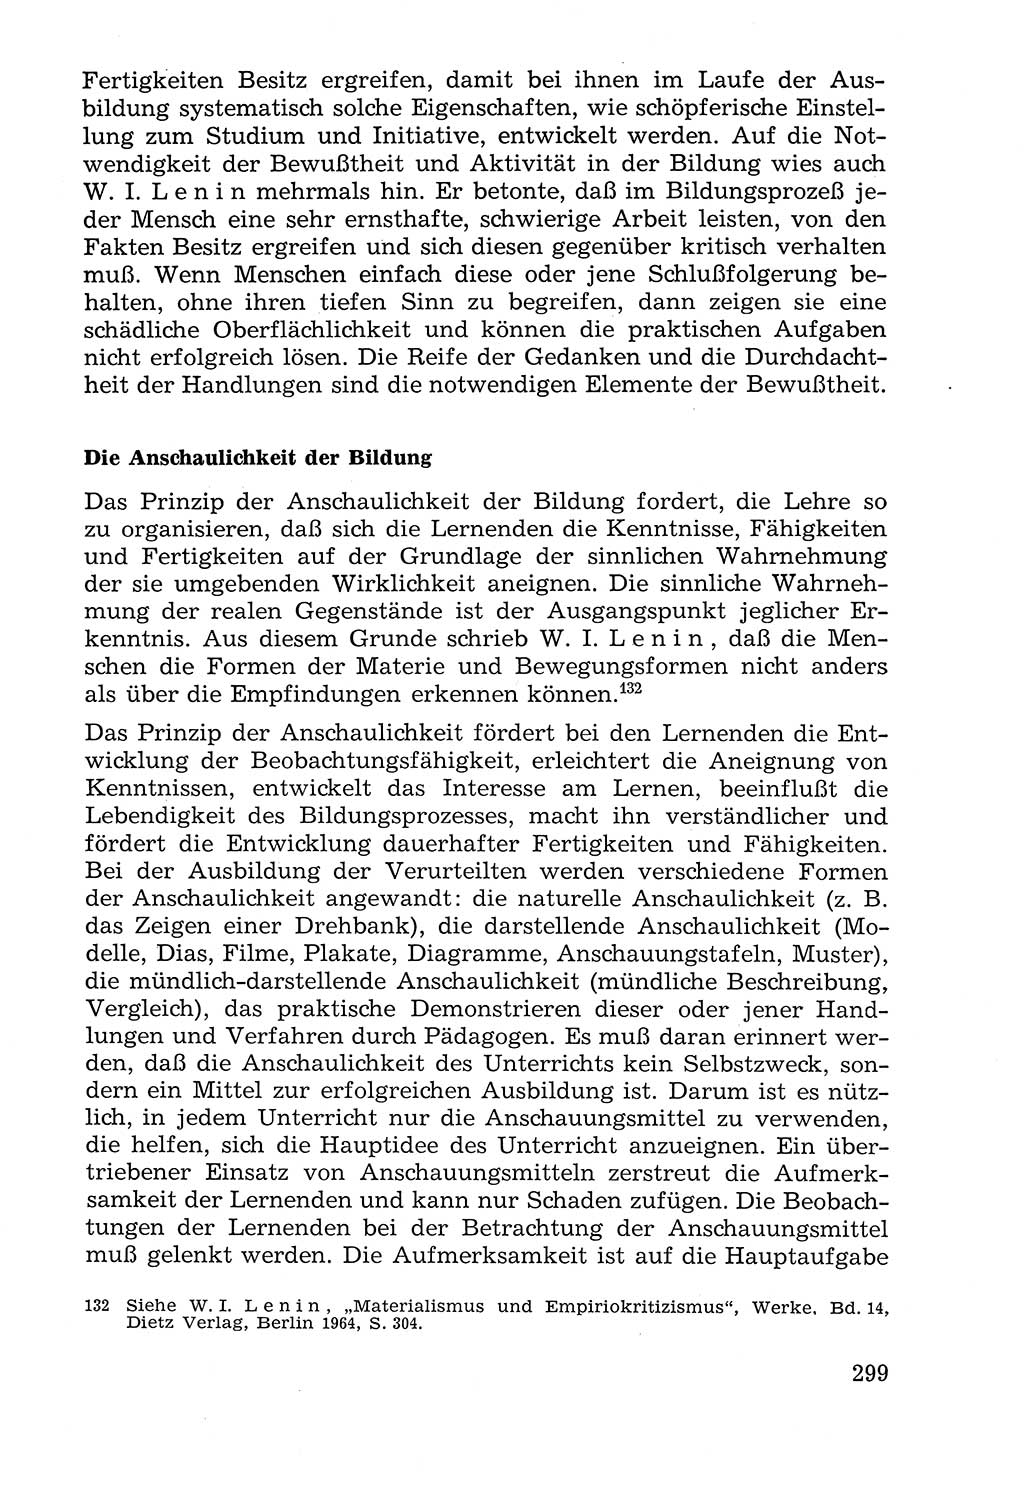 Lehrbuch der Strafvollzugspädagogik [Deutsche Demokratische Republik (DDR)] 1969, Seite 299 (Lb. SV-Pd. DDR 1969, S. 299)